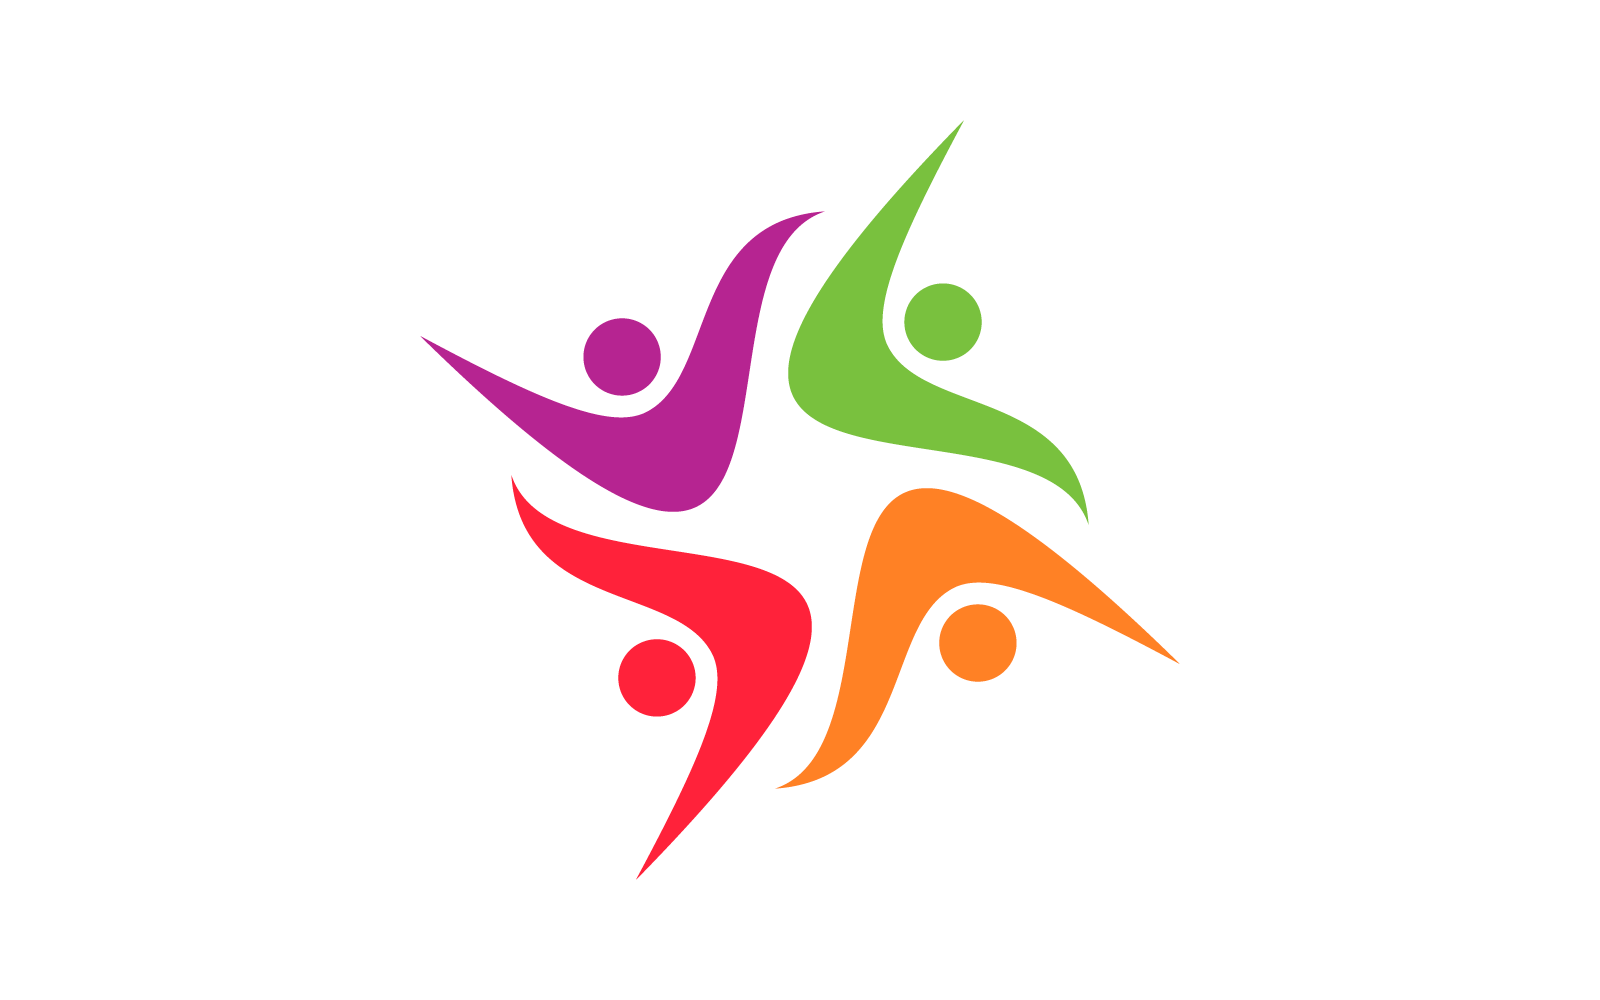 Design plano de logotipo comunitário e social